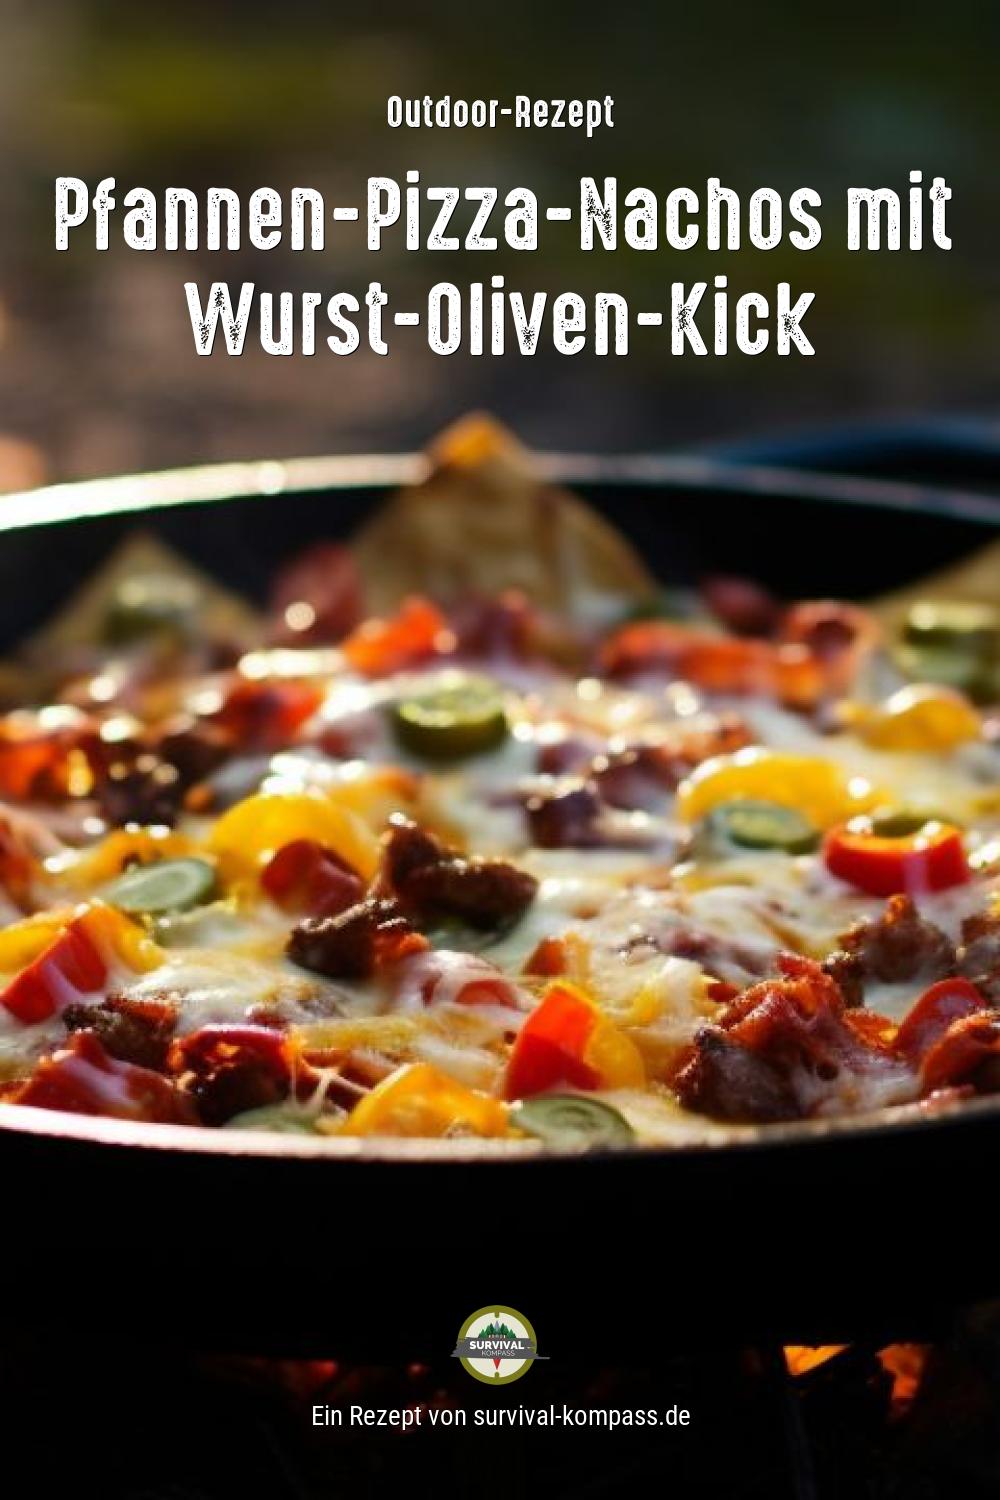 Pfannen-Pizza-Nachos mit Wurst-Oliven-Kick